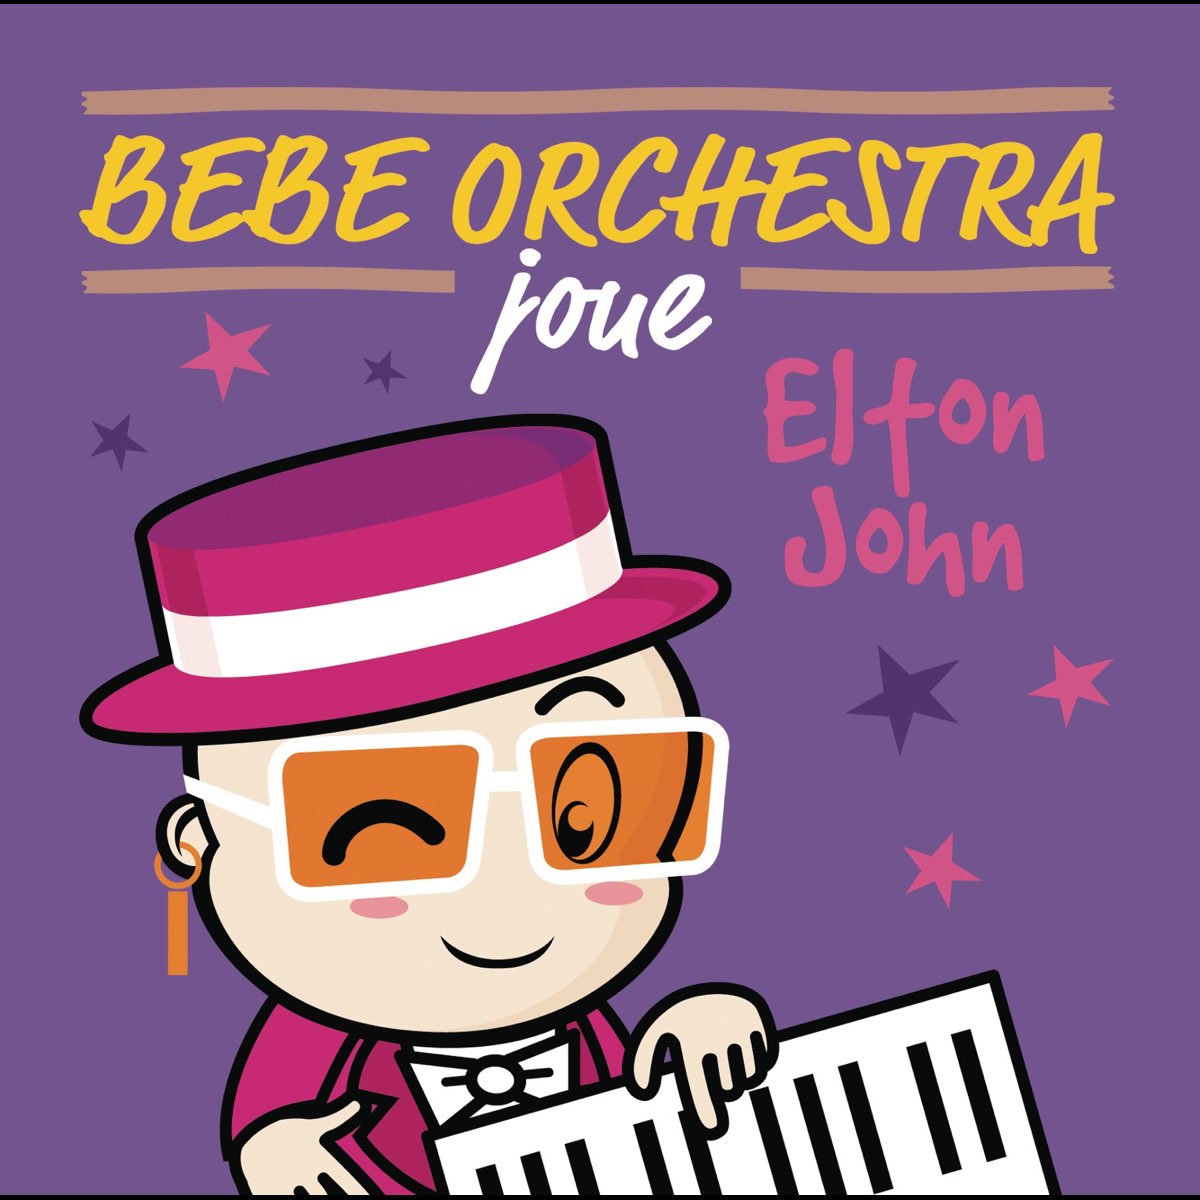 Bébé orchestra joue Elton John – Album par Judson Mancebo – Apple Music